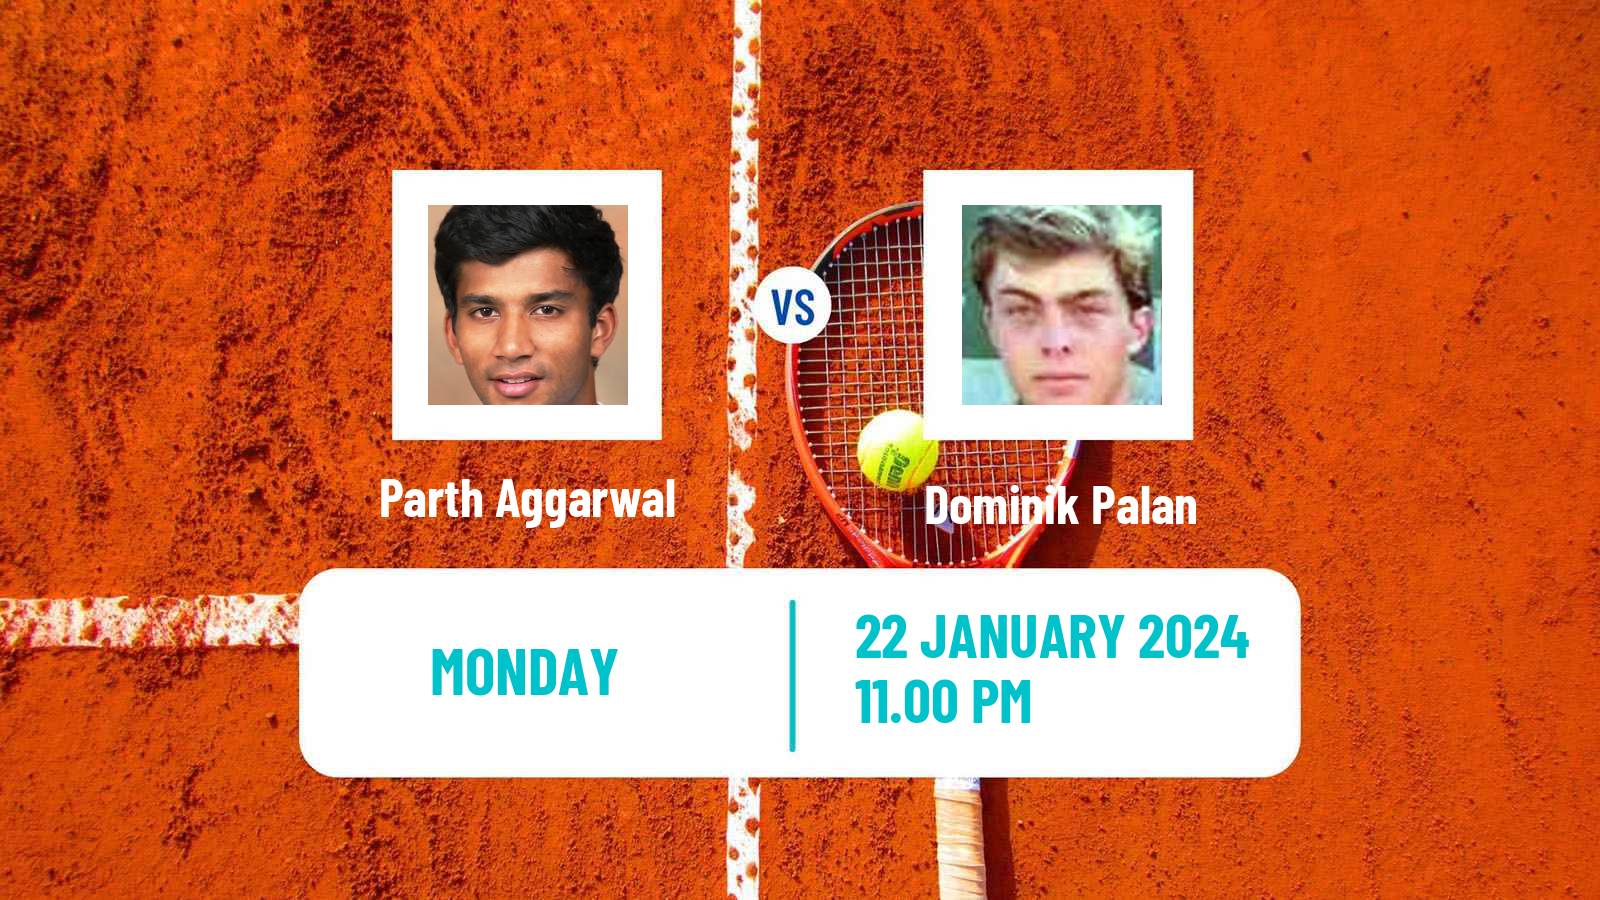 Tennis ITF M25 Chennai Men Parth Aggarwal - Dominik Palan